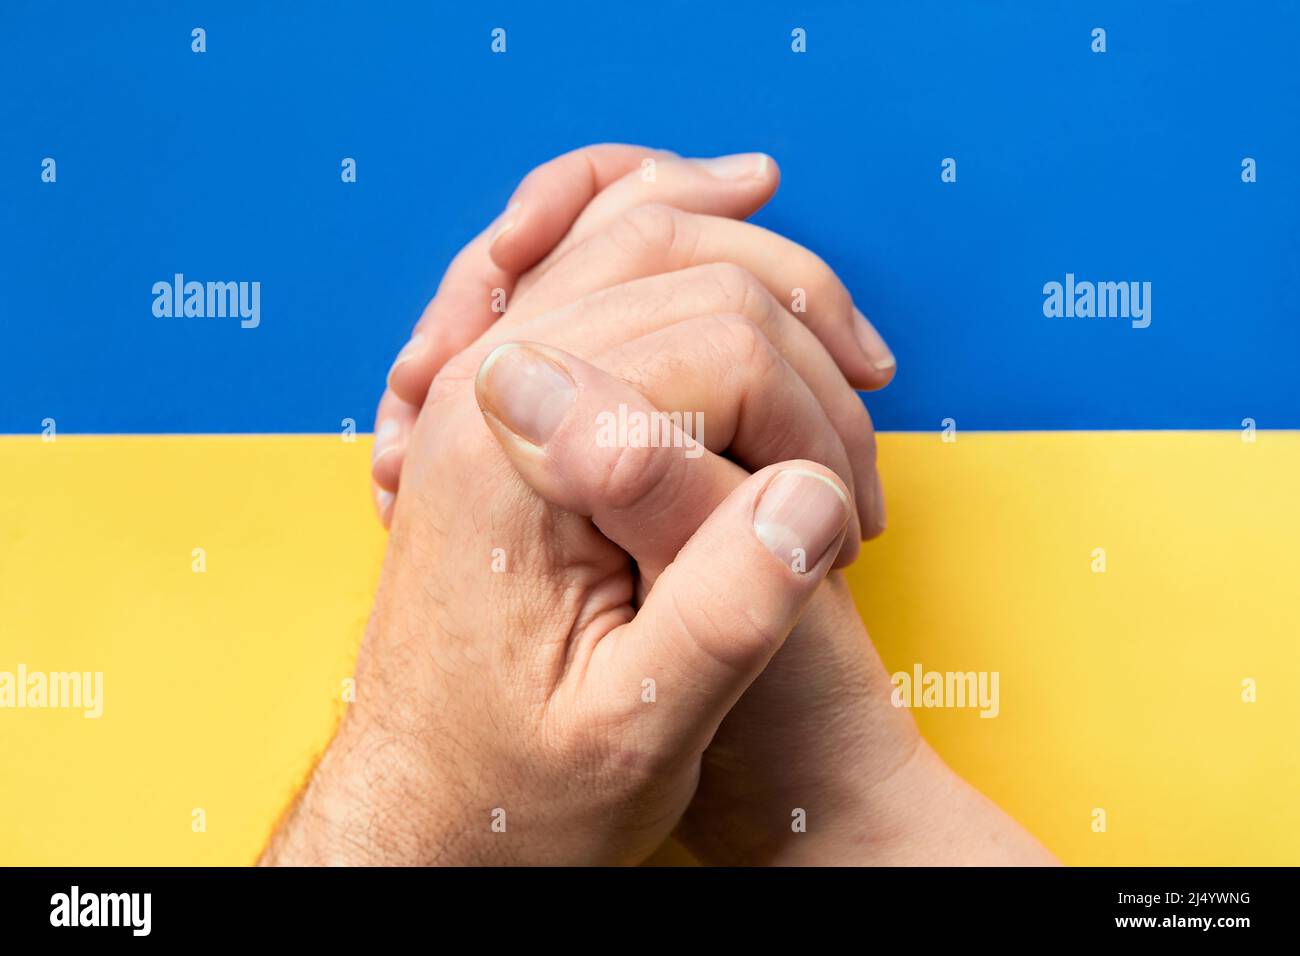 Klatschende Hände, Nahaufnahme von kaukasischen männlichen und weiblichen Händen. Flach liegend, Draufsicht auf blaugelbem Papierhintergrund, Ukraine-Flaggenfarben. Stockfoto